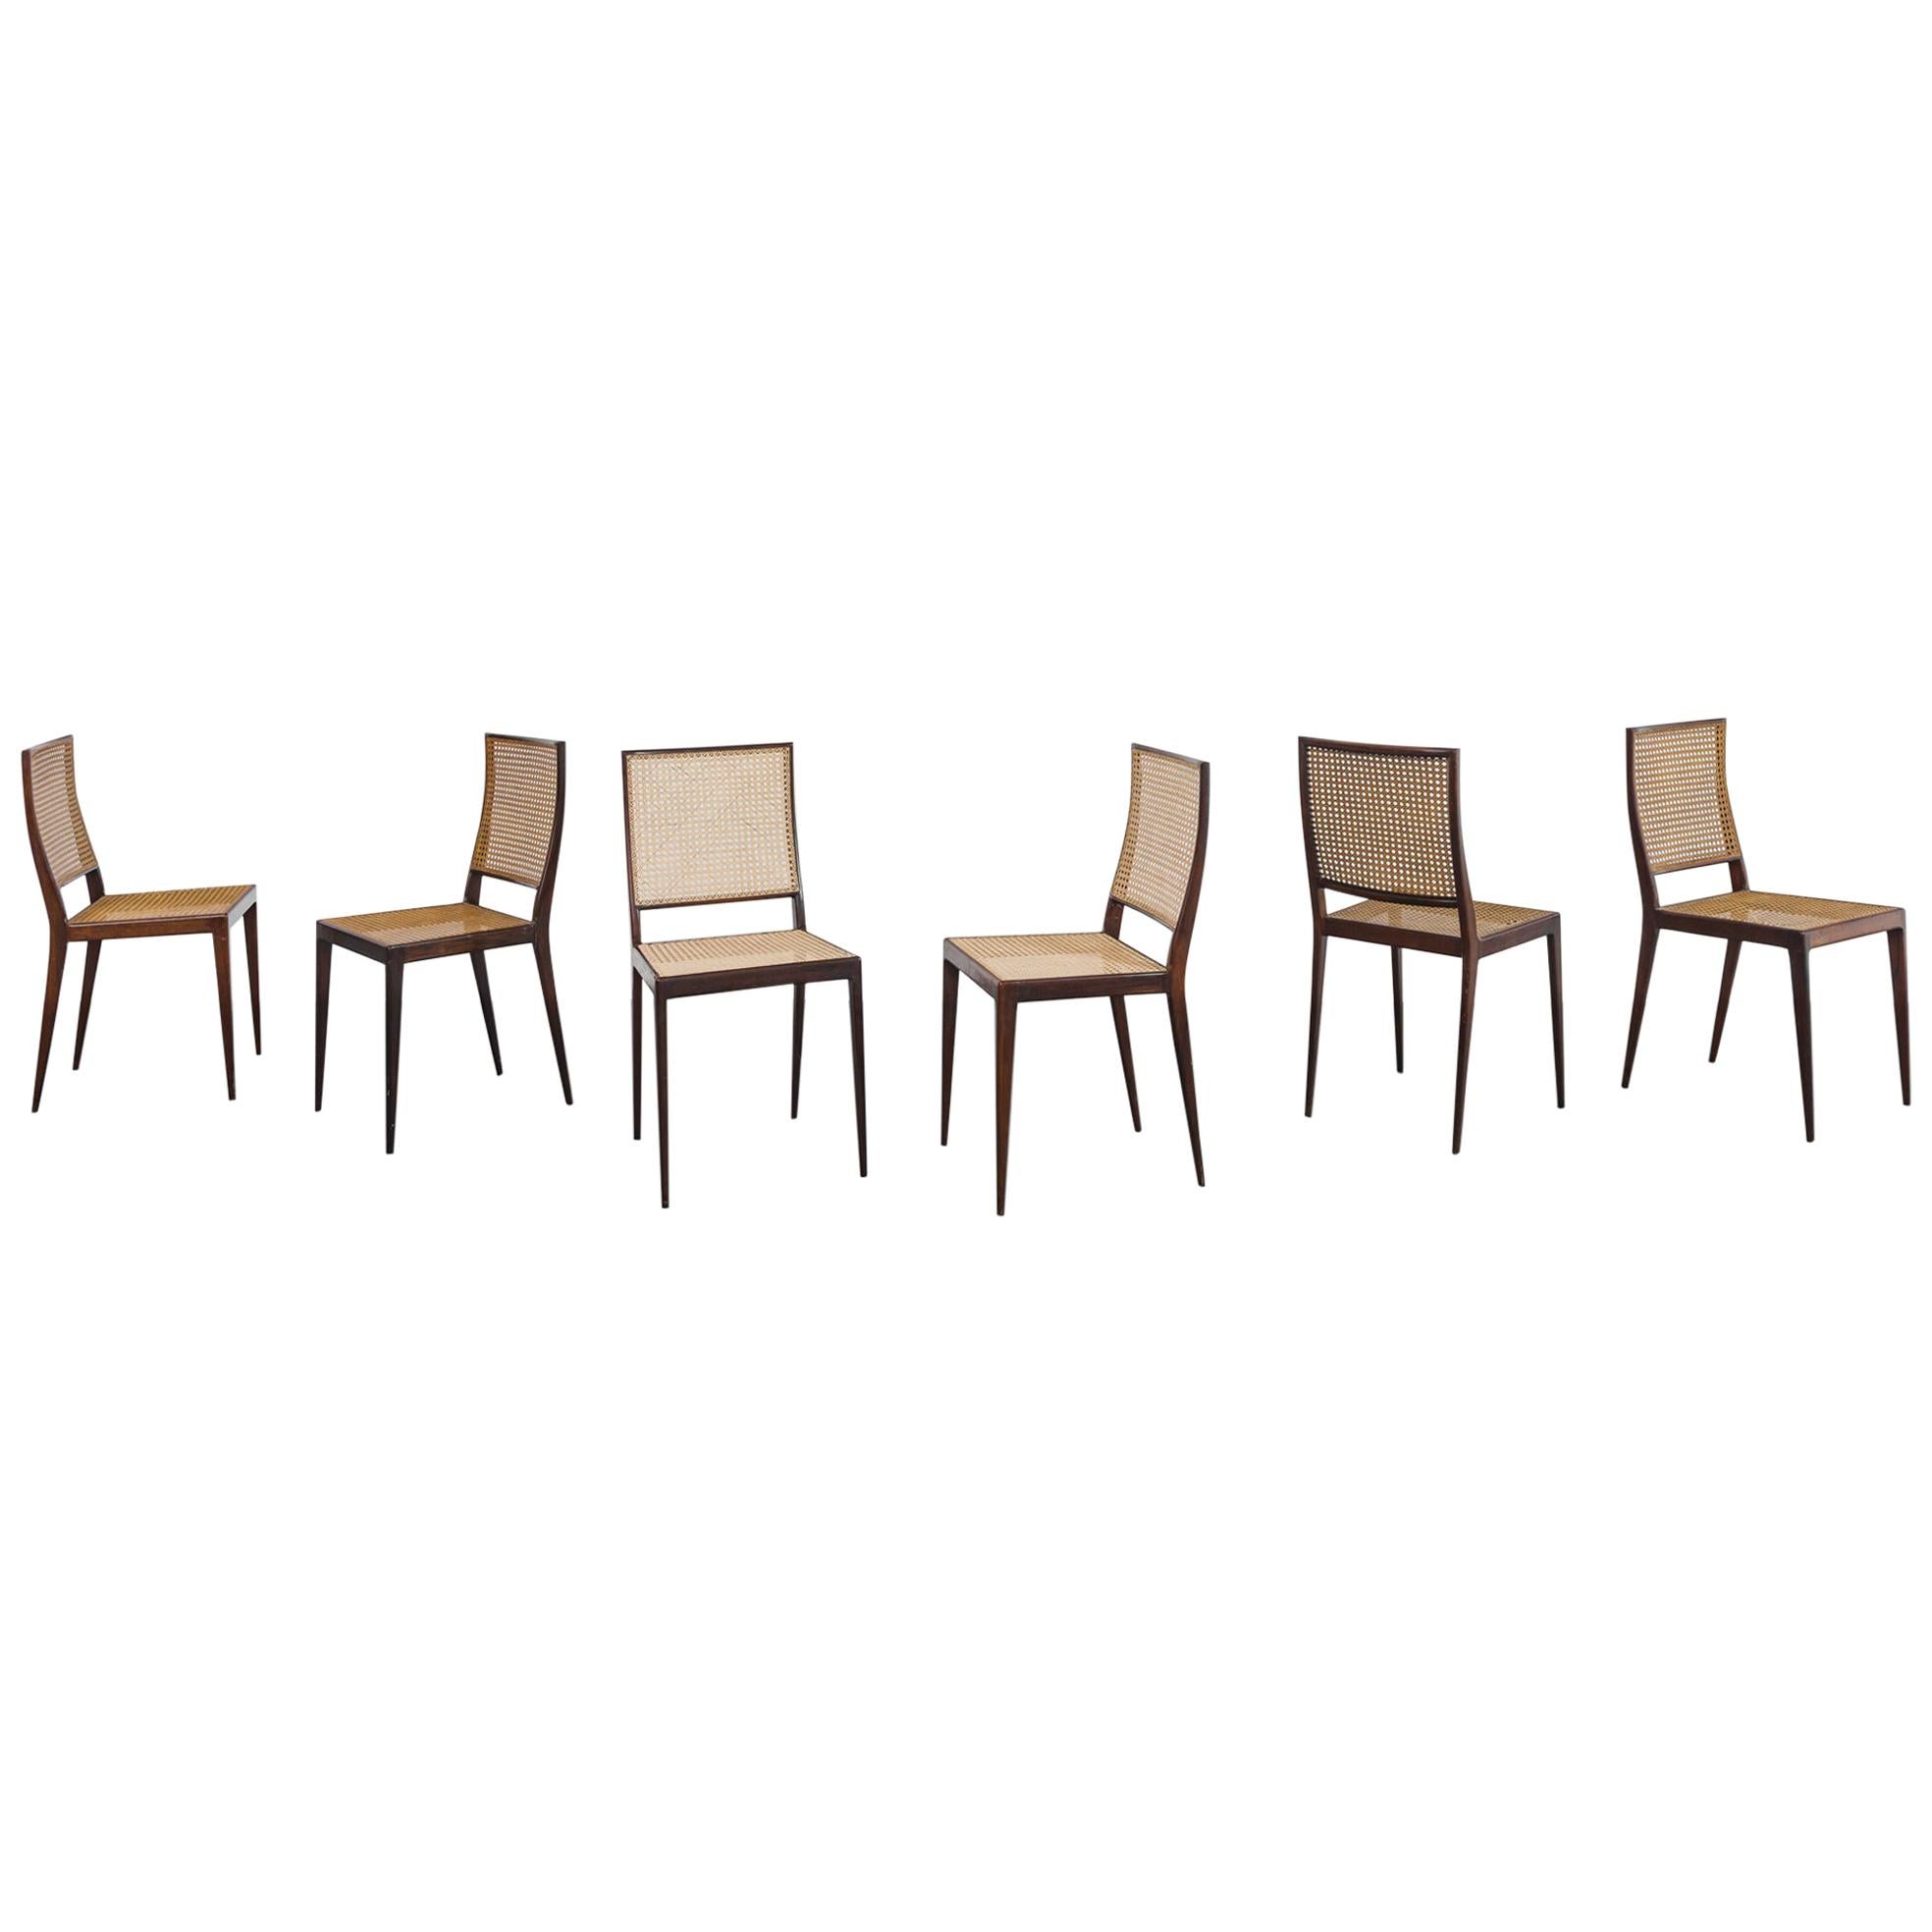 Ensemble de 6 chaises Unilabor MT 552, Geraldo de Barros, années 1960, design brésilien